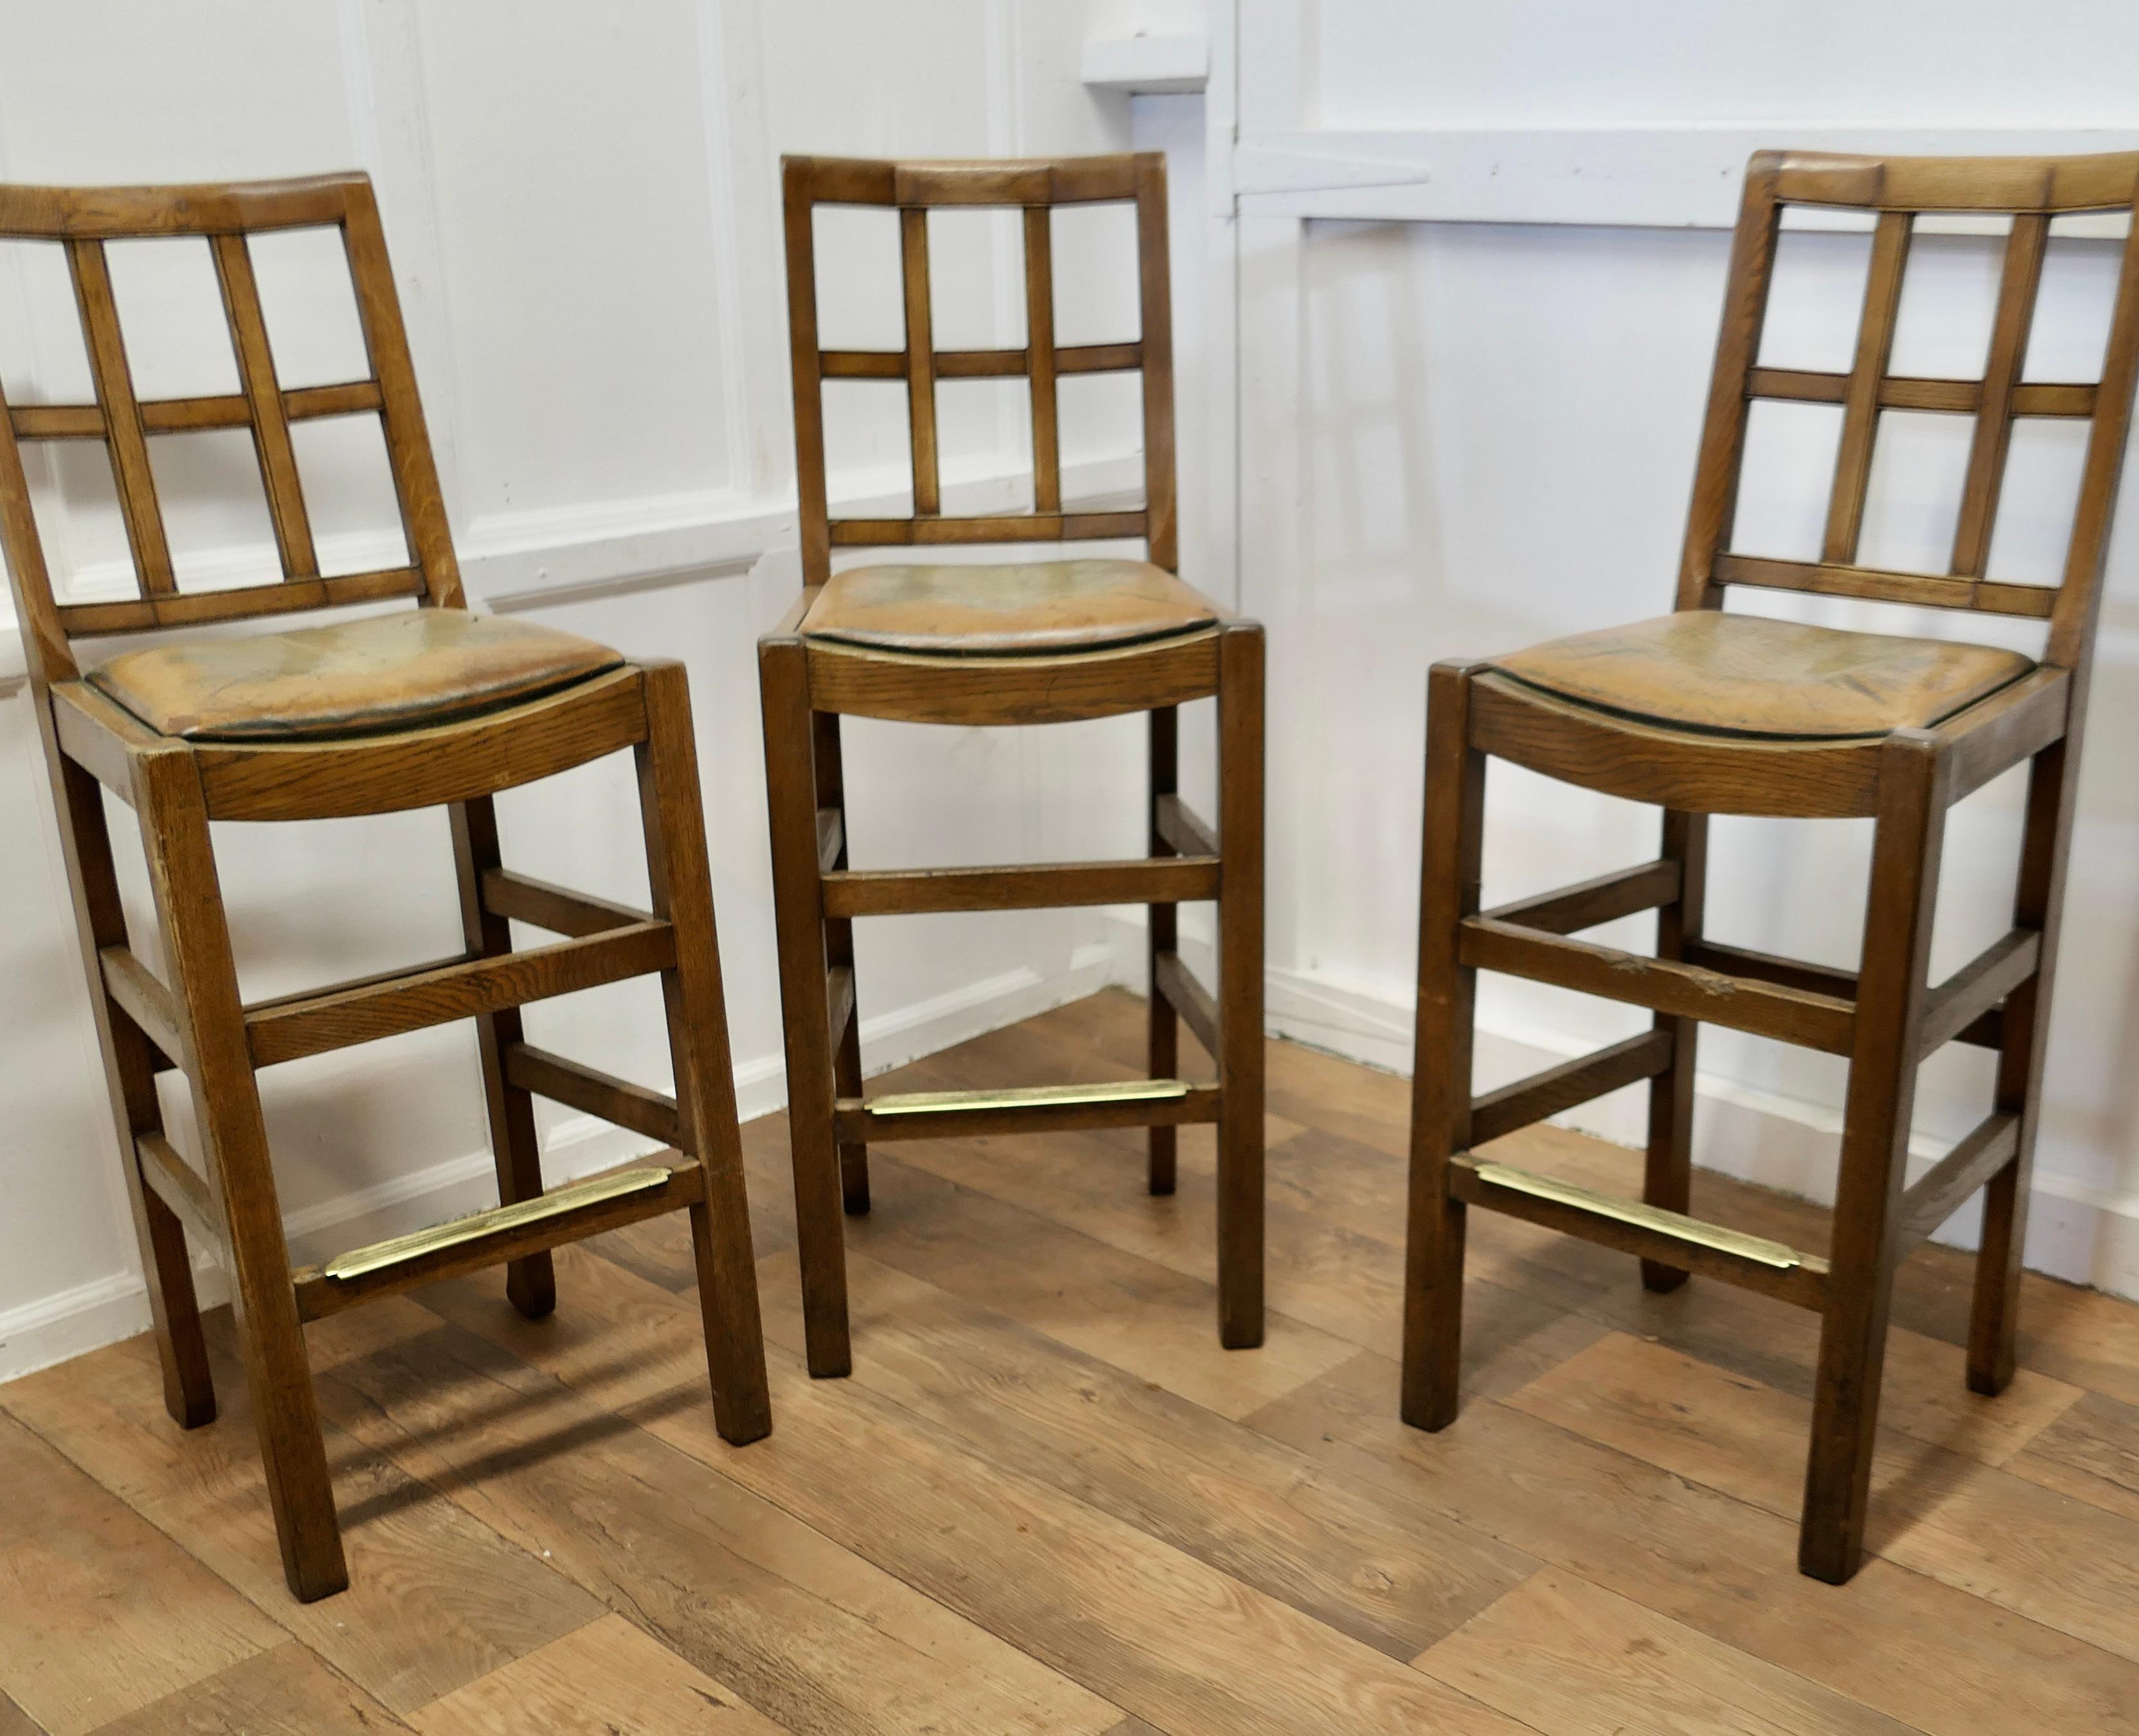 Trio rare de tabourets de bar hauts de style Arts and Crafts, en Oak Oak doré

Trio de chaises de salle à manger à dossier en treillis en chêne du début du 20e siècle, probablement par Heal's. Les chaises sont en chêne doré. Les chaises ont les